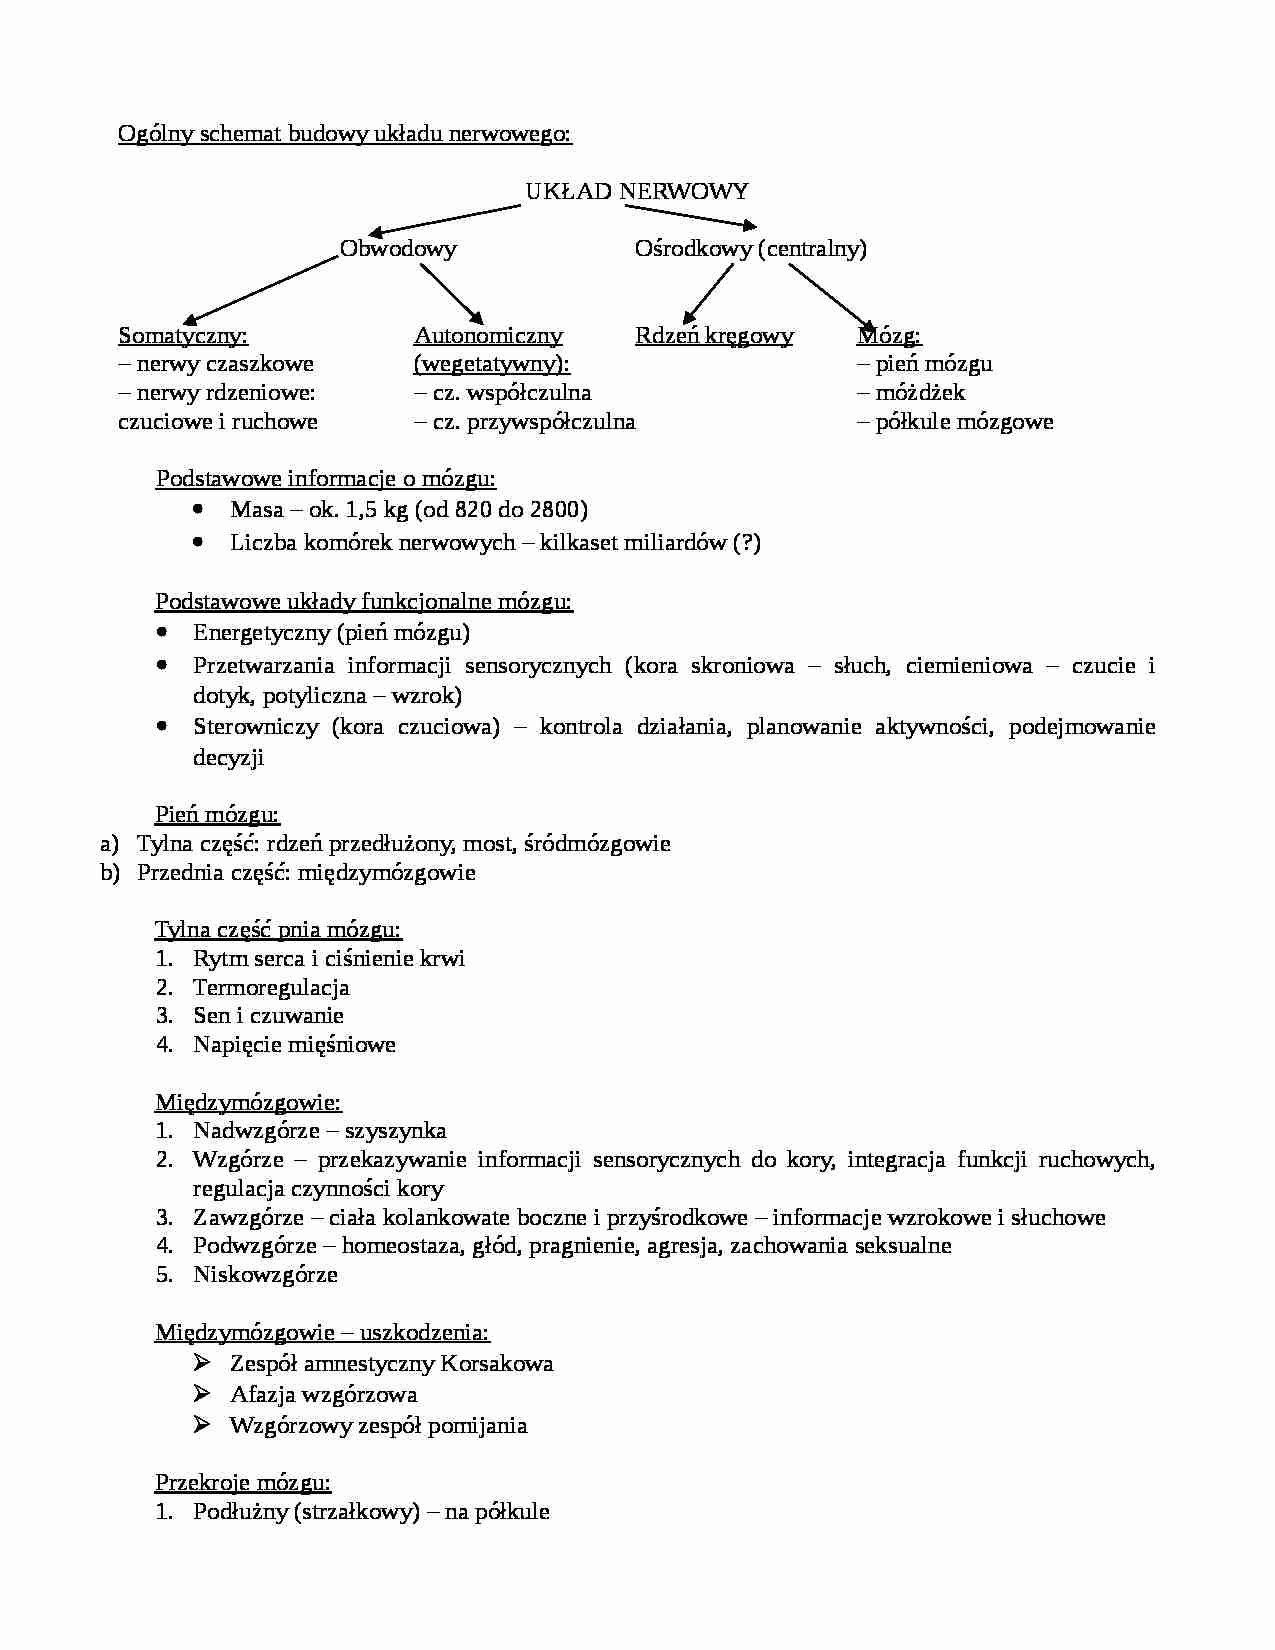 Ogólny schemat budowy układu nerwowego - strona 1